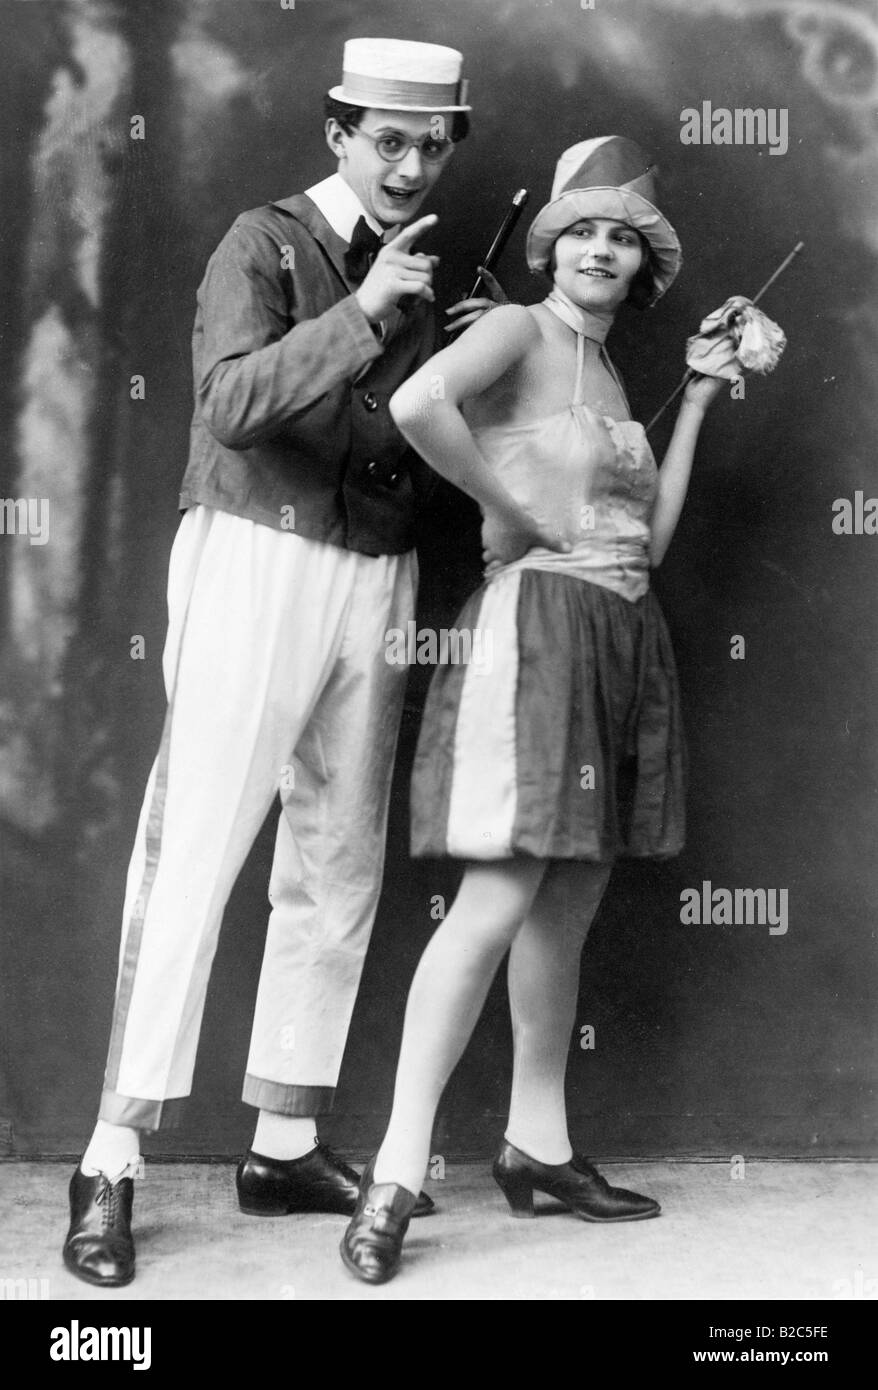 Mann und Frau tragen seltsame Kleidung, historische Bild von ca. 1920  Stockfotografie - Alamy